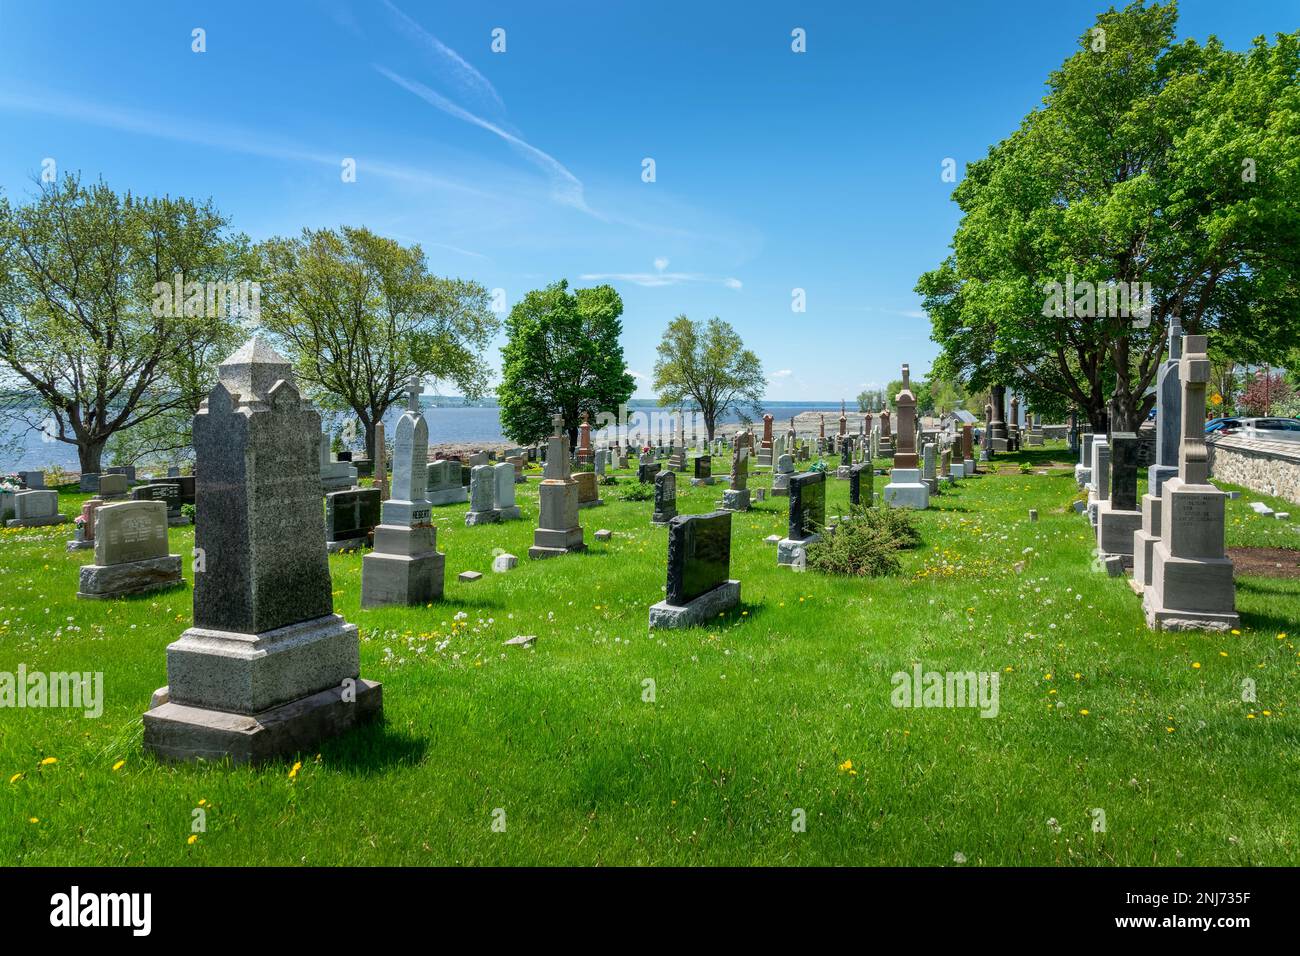 Alter Friedhof im Dorf Saint Jean auf der Insel Orleans in der Nähe von Quebec City, Kanada Stockfoto